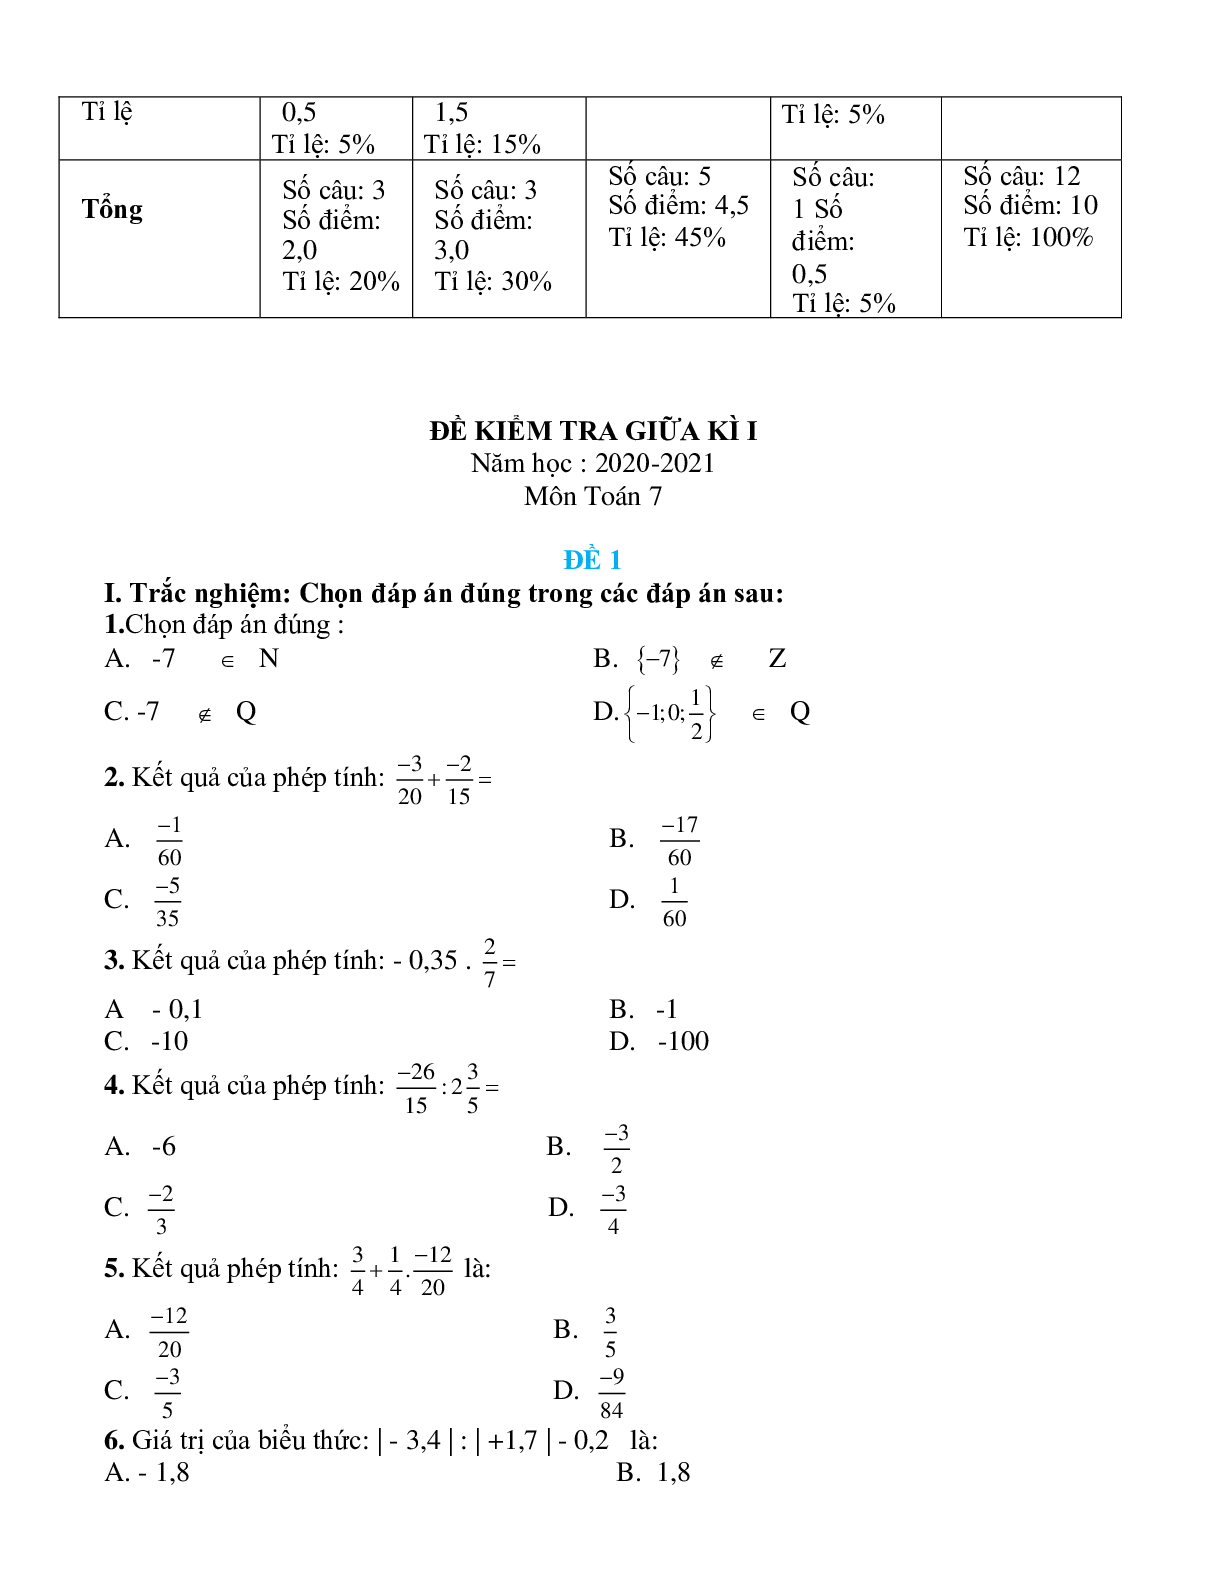 Ma trận đề kiểm tra giữa kì 1 Toán 7 (trang 2)